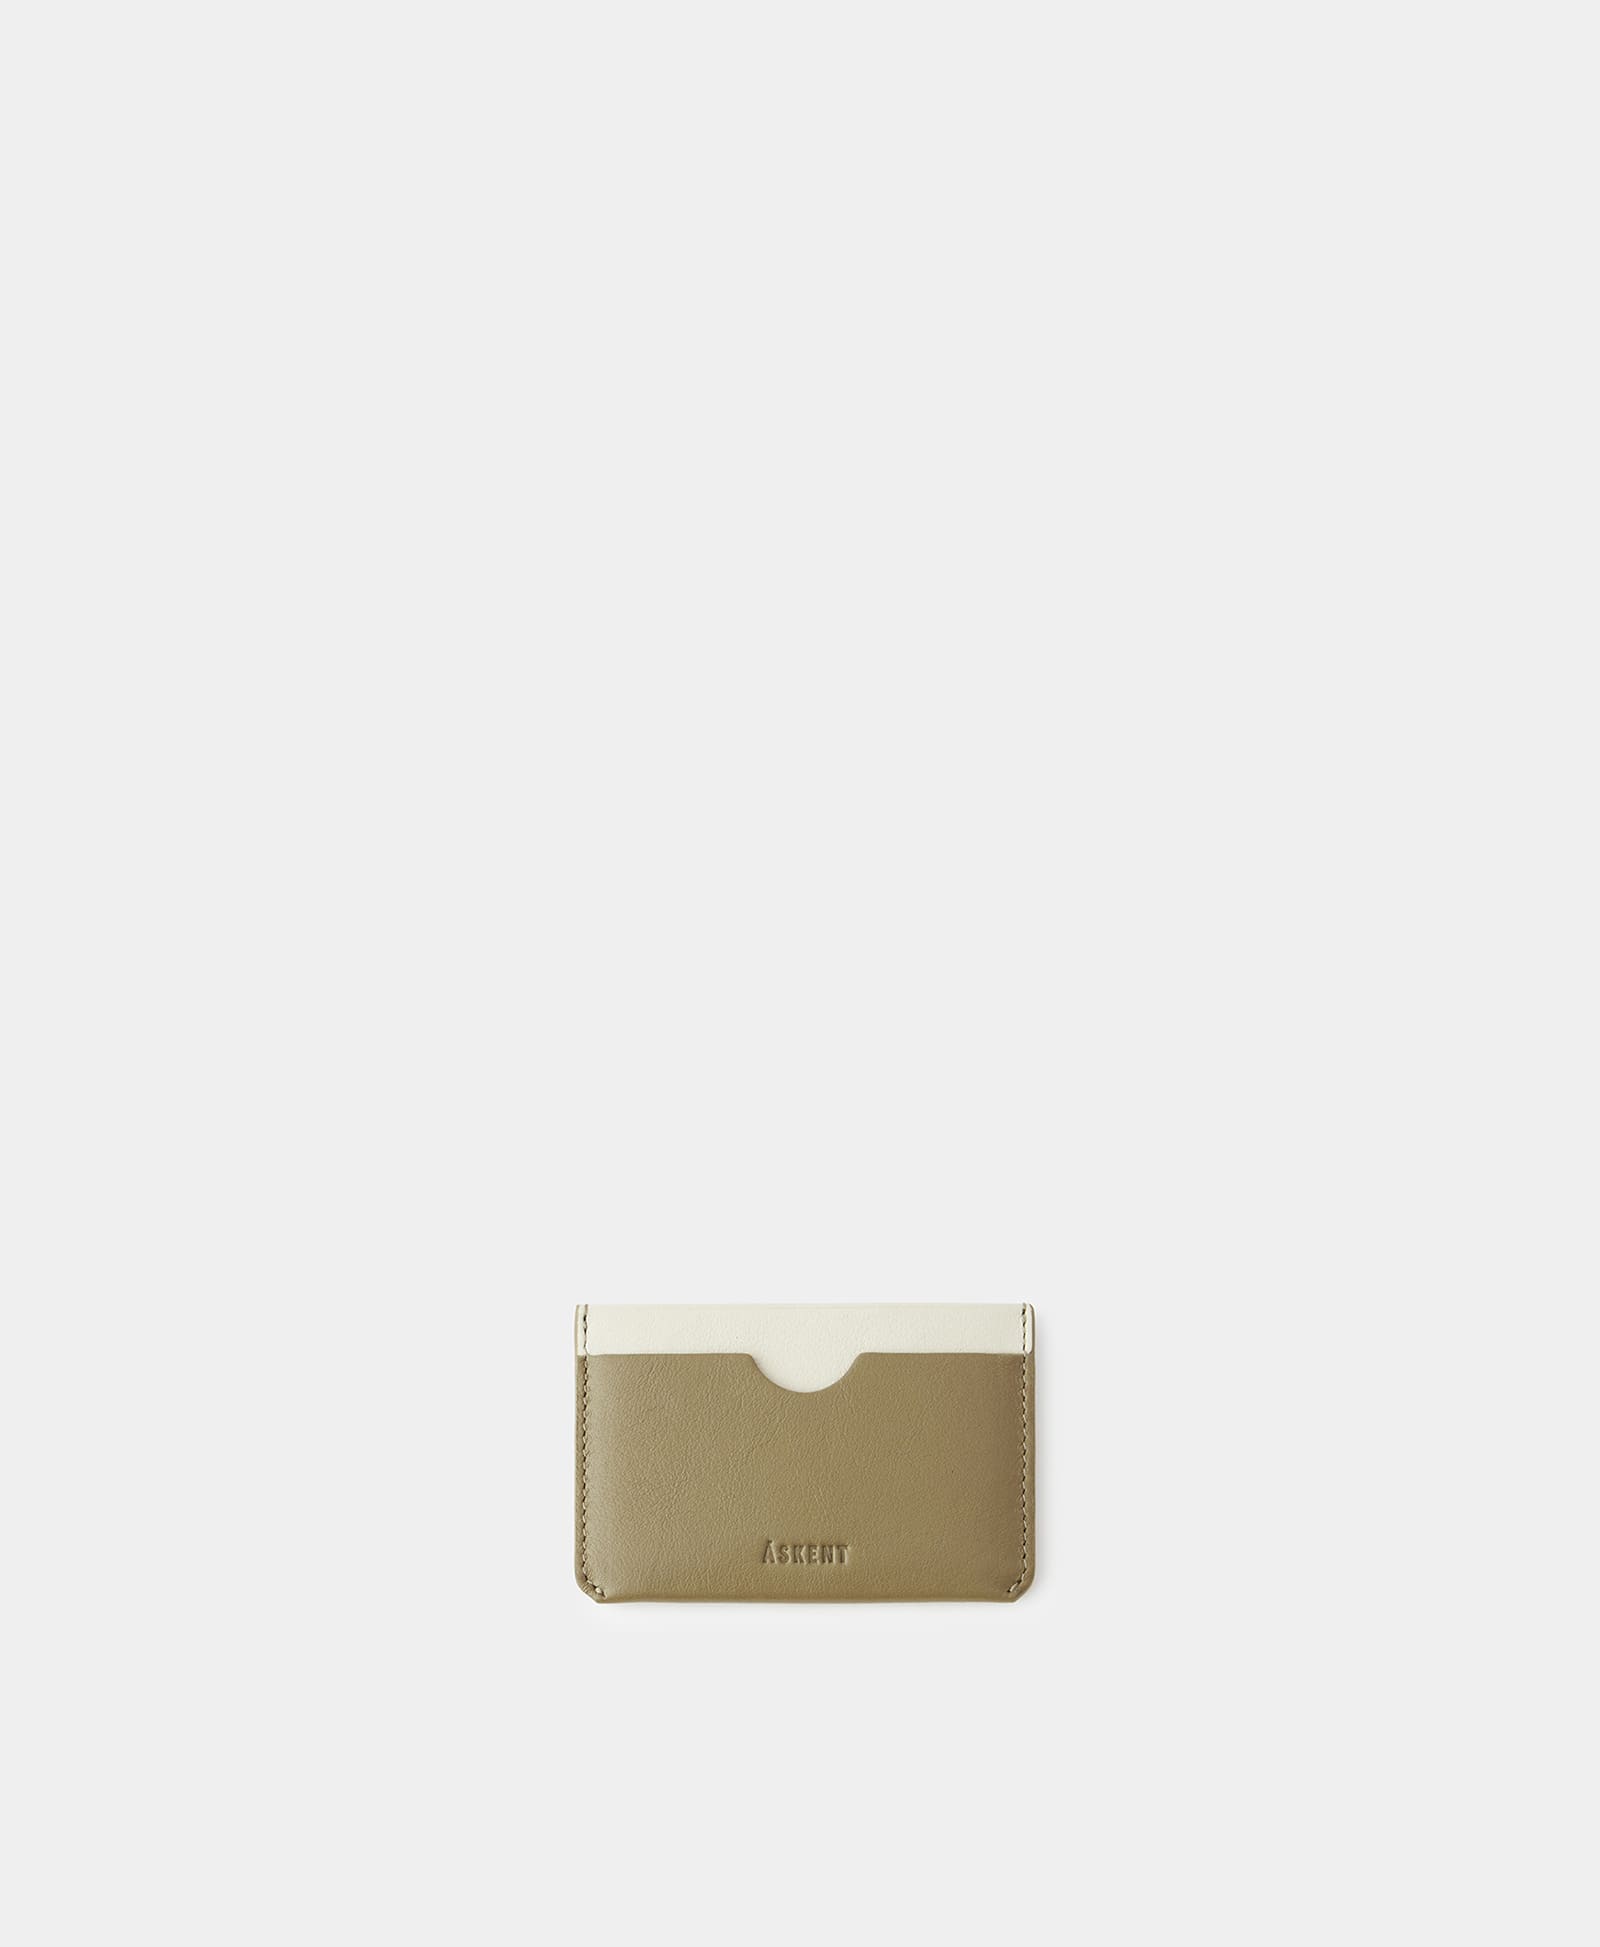 МИНИ-КРЕДИТНИЦА мини кошелек bello тутти для женщин оригинальный маленький бумажник на защелке из натуральной овечьей кожи кредитница на молнии